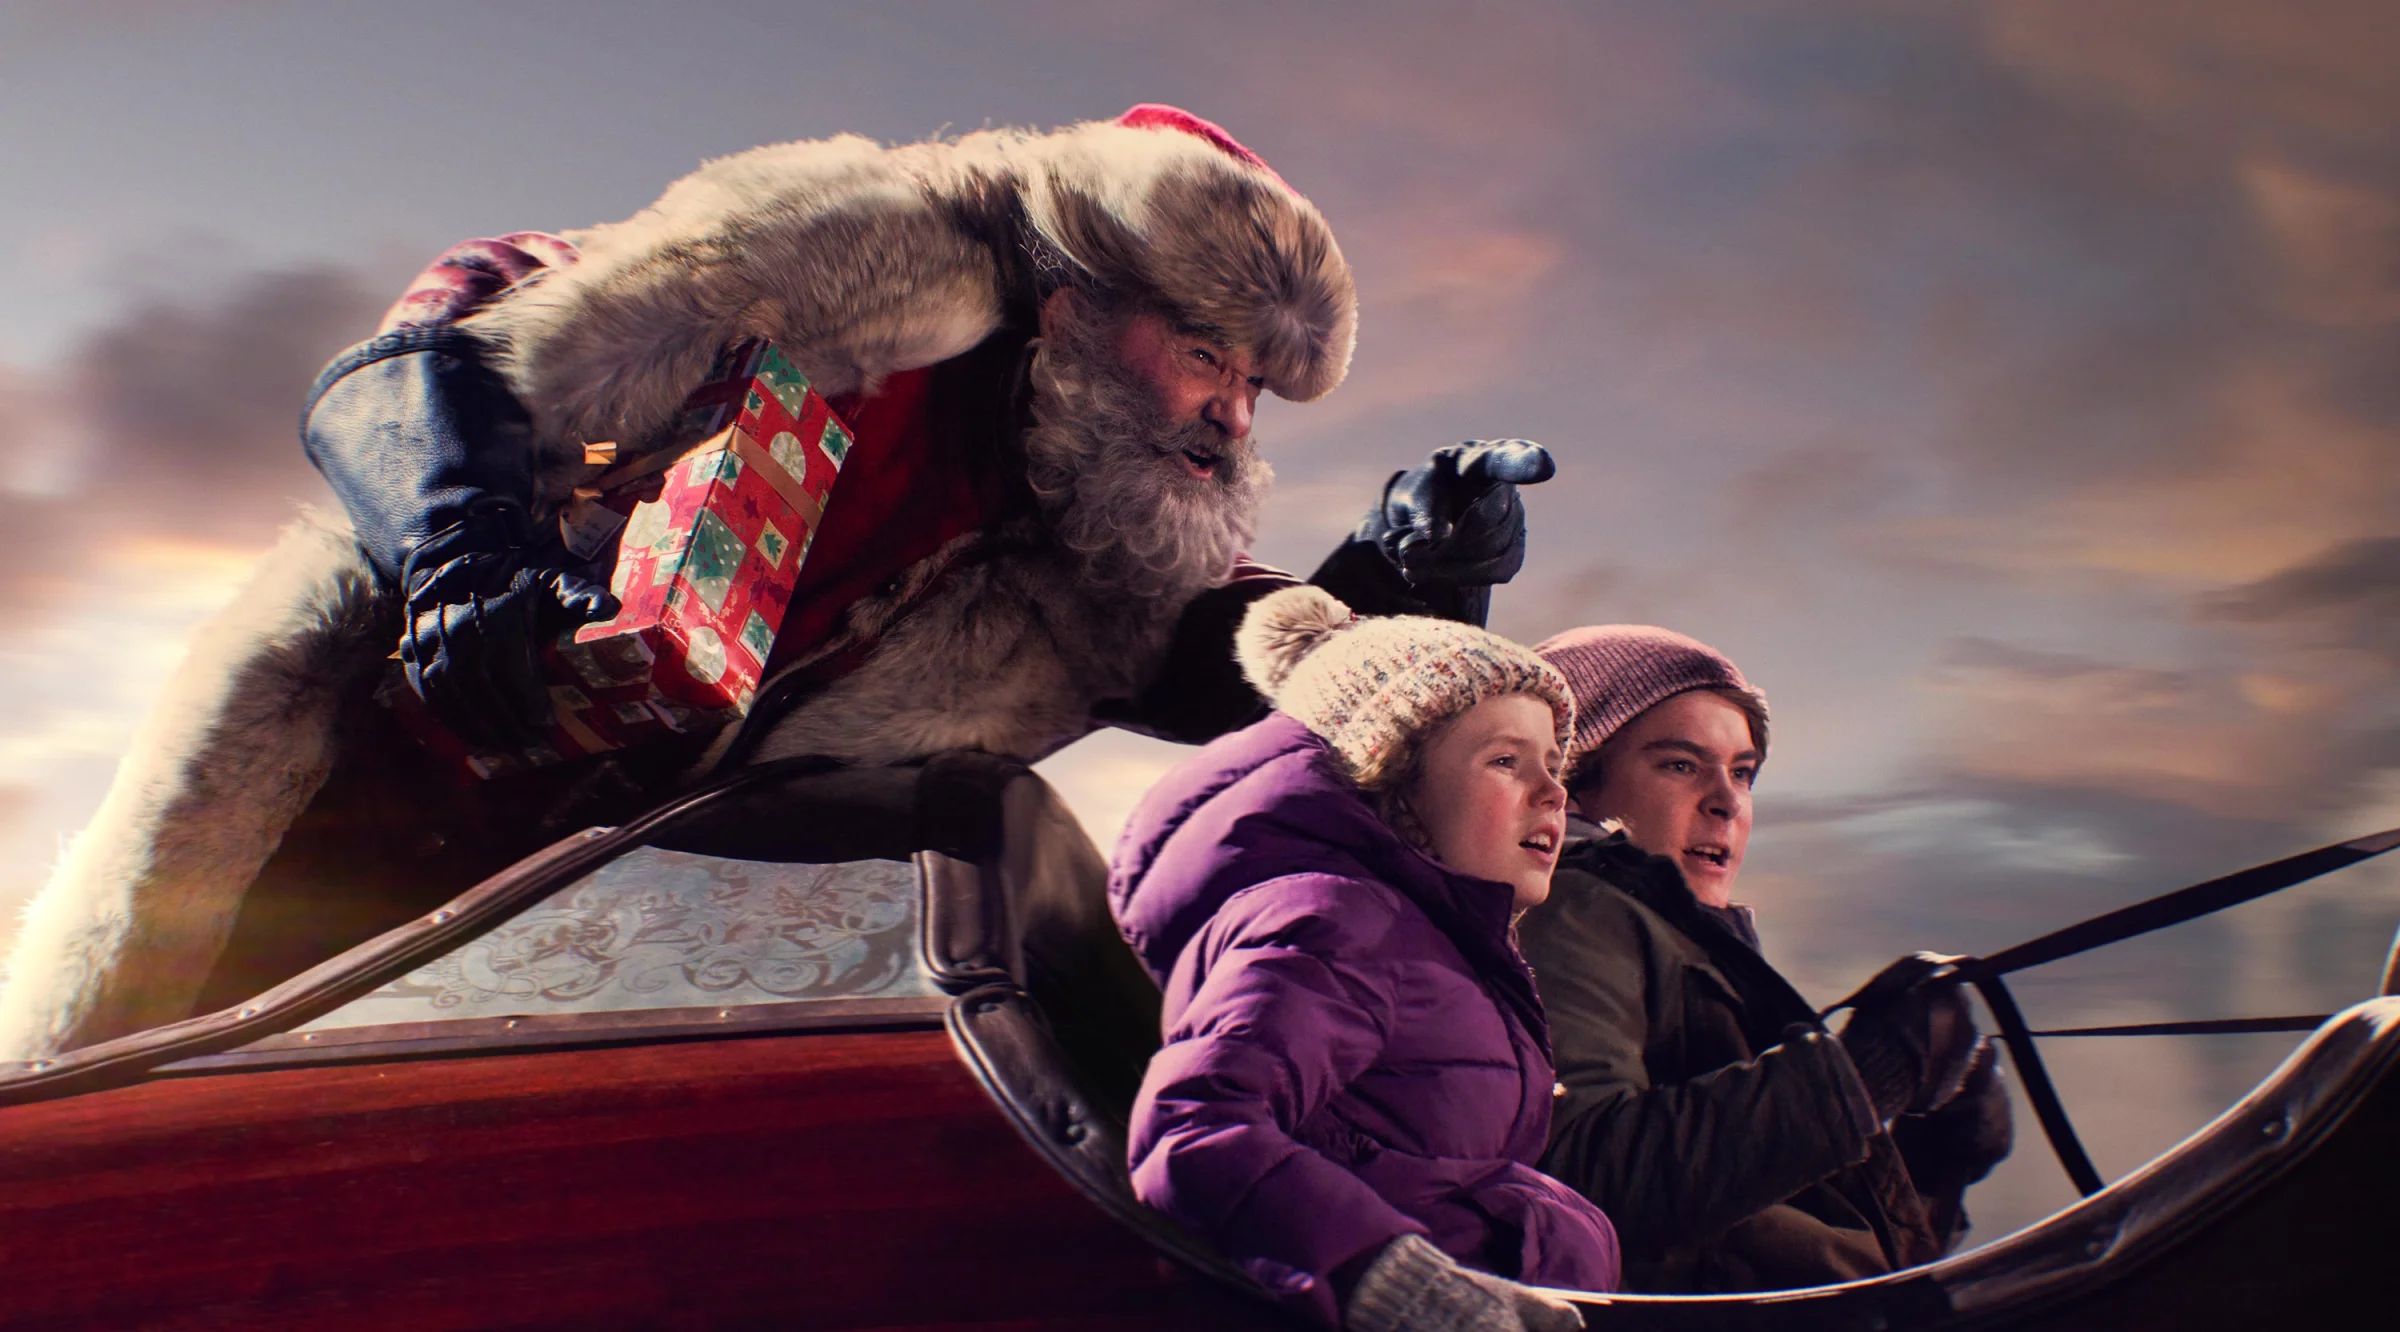 Хороший, плохой, злой Санта: зарубежные новогодние и рождественские фильмы для праздничной атмосферы